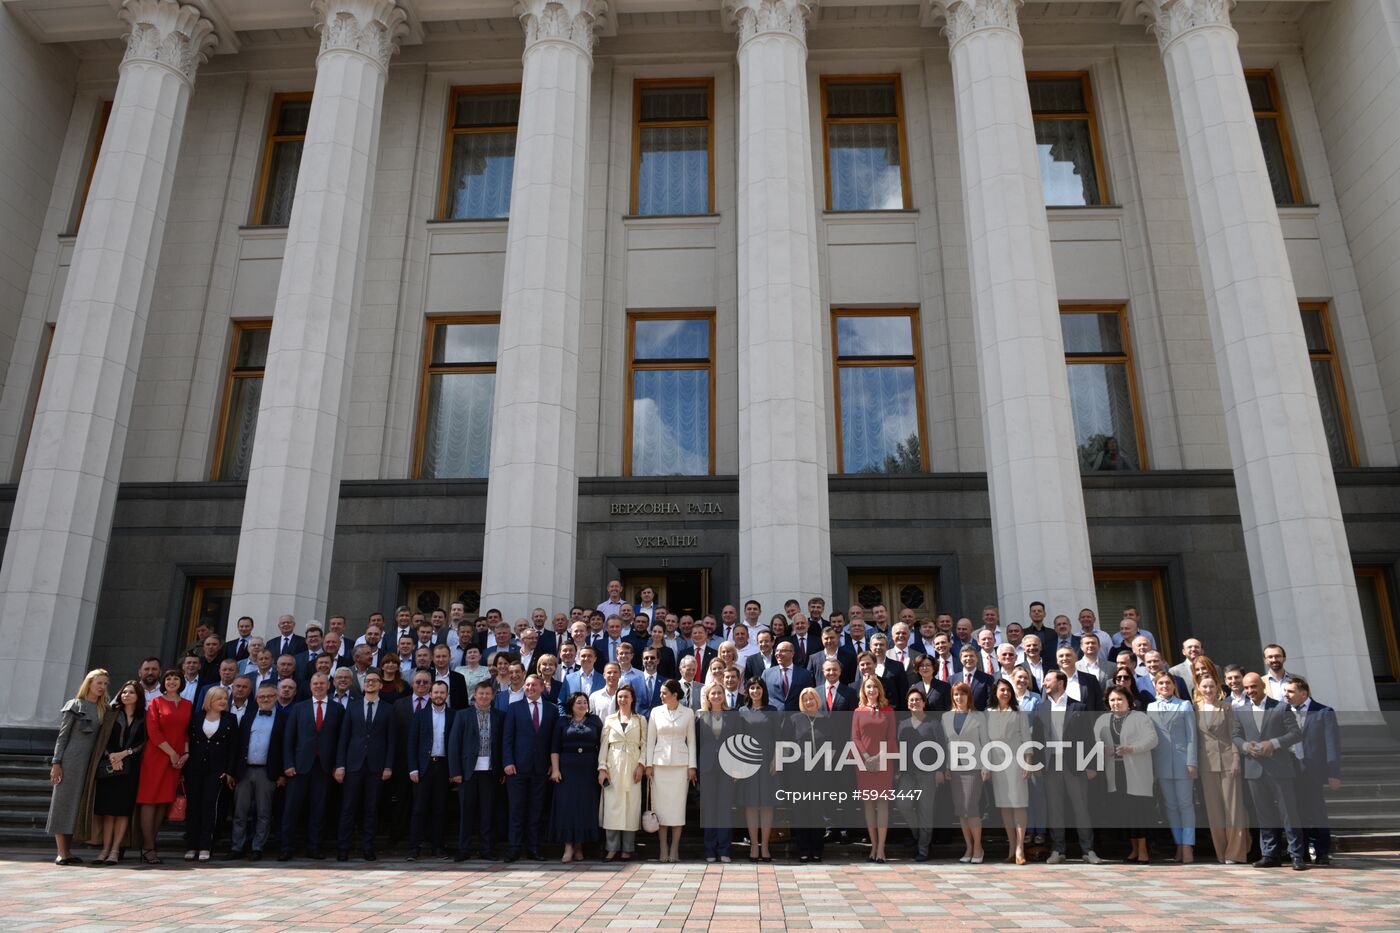 Внеочередное заседание Верховной рады Украины